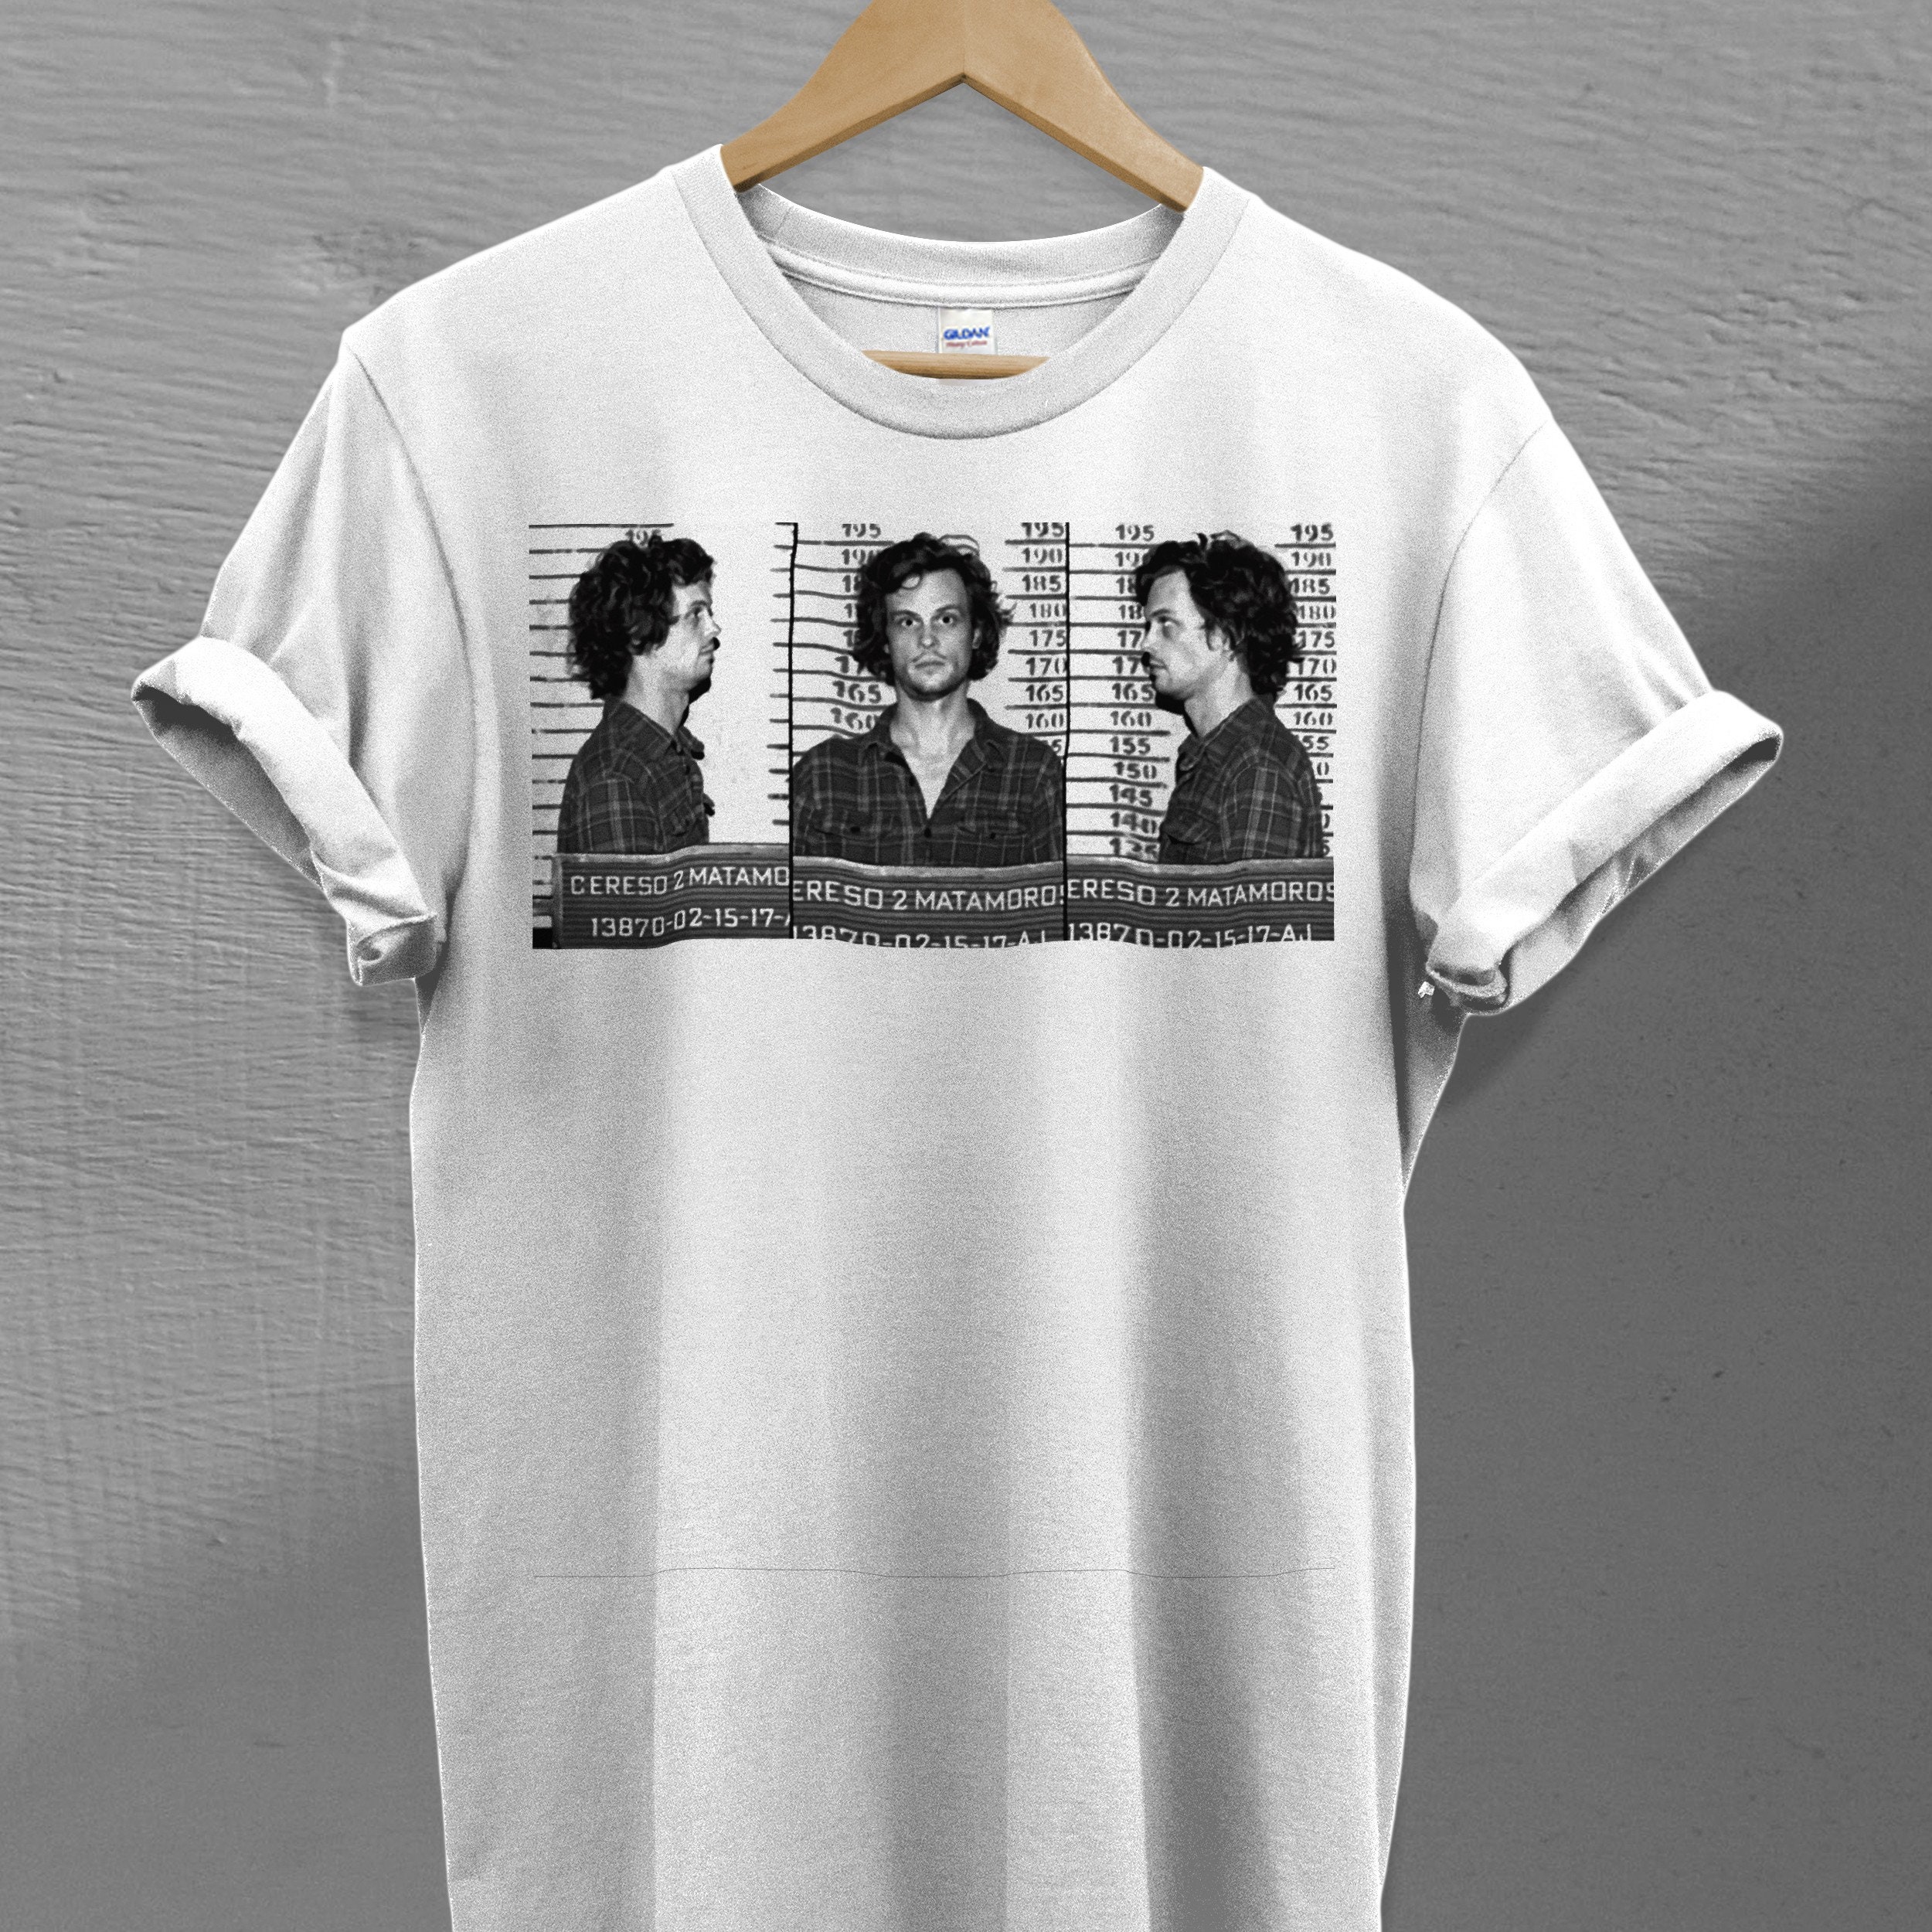 Spencer Reid Mugshot Criminal Minds TV Series Unisex T-Shirt